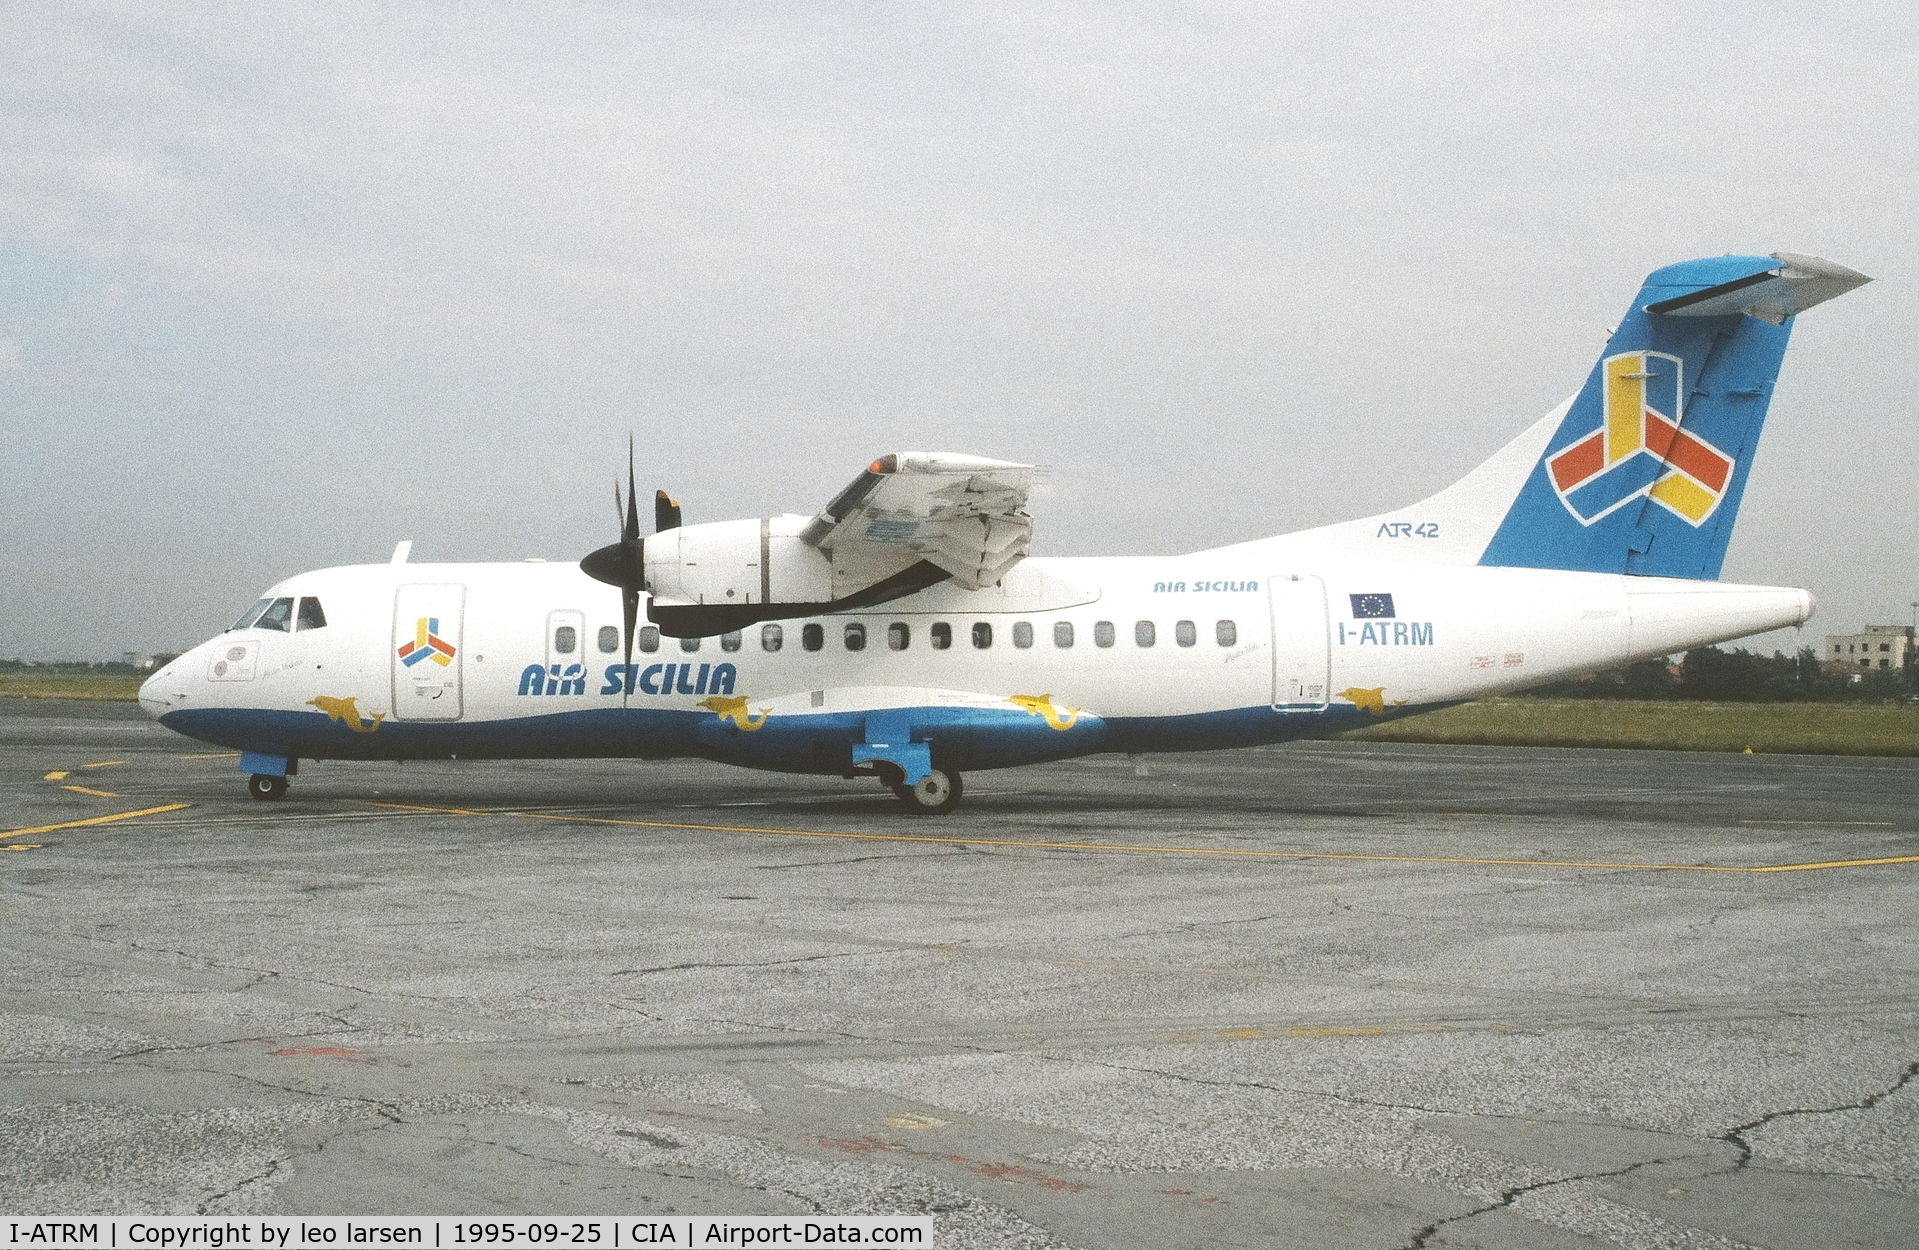 I-ATRM, 1988 ATR 42-300 C/N 114, CIAMPINO  25.9.1995